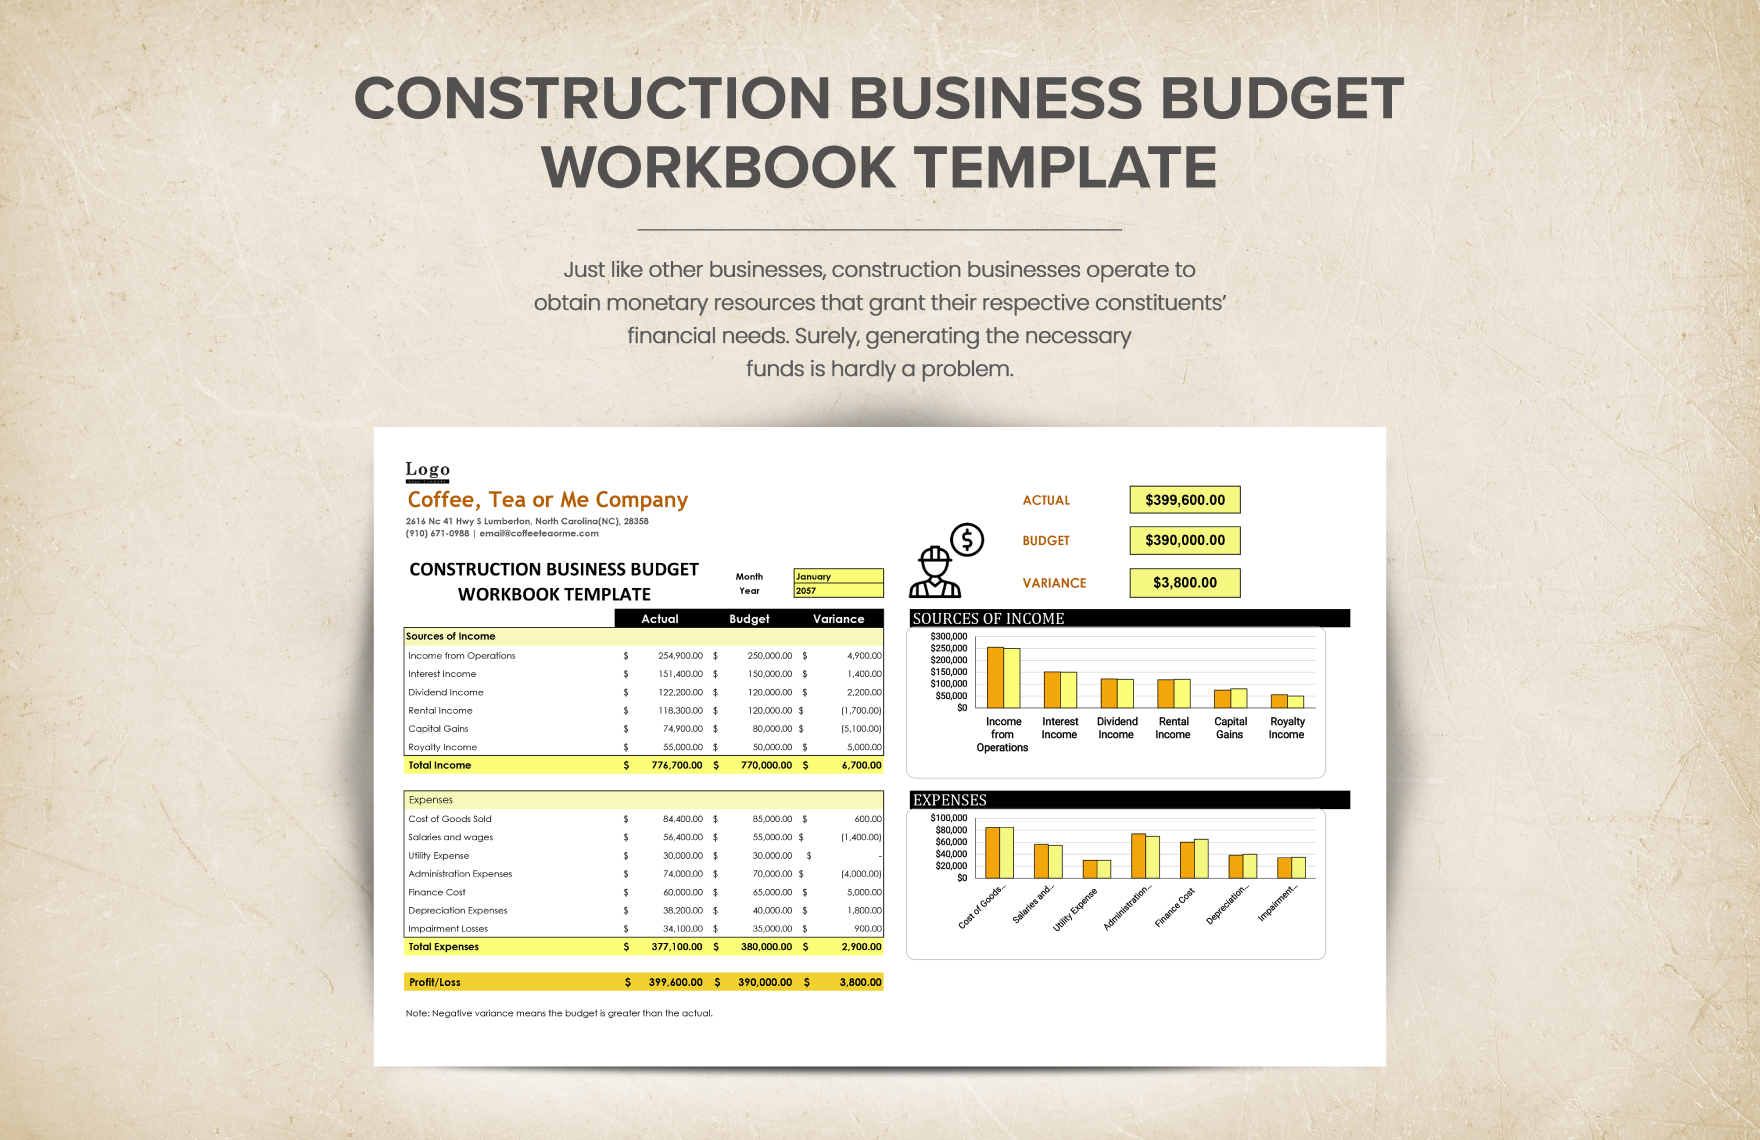 Construction Business Budget Workbook Template